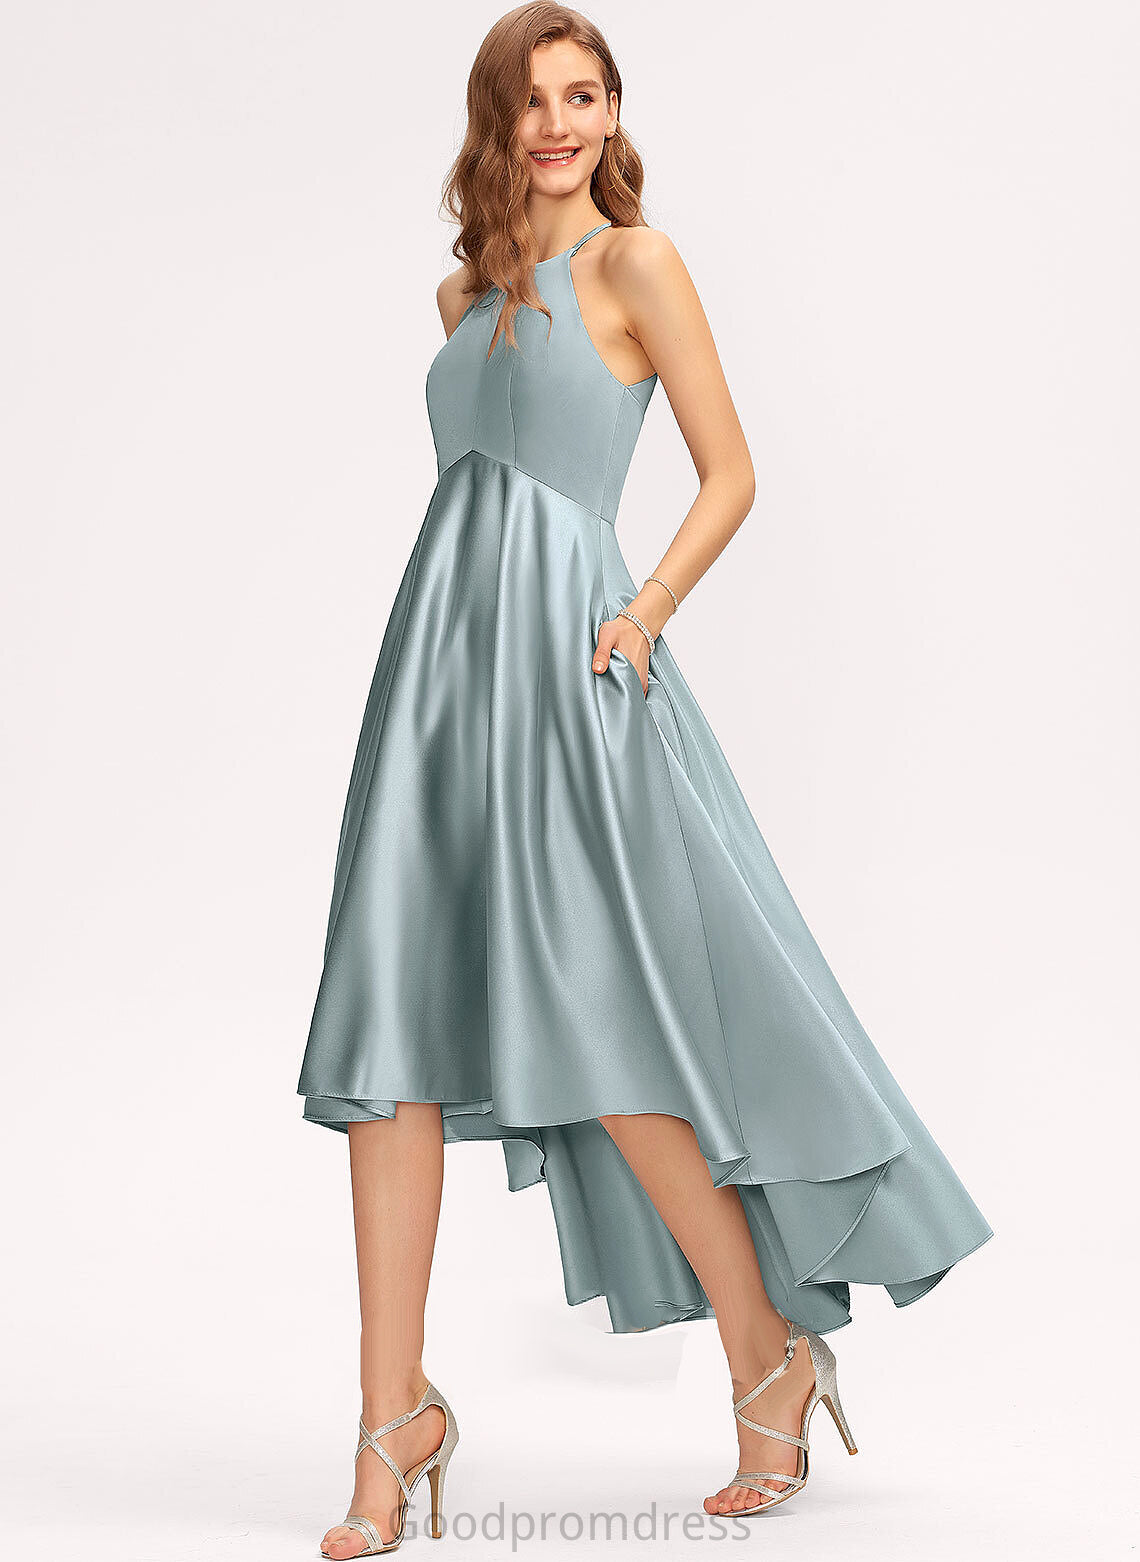 Embellishment Fabric Length Pockets Asymmetrical ScoopNeck Neckline Silhouette A-Line Kaley Halter A-Line/Princess Bridesmaid Dresses